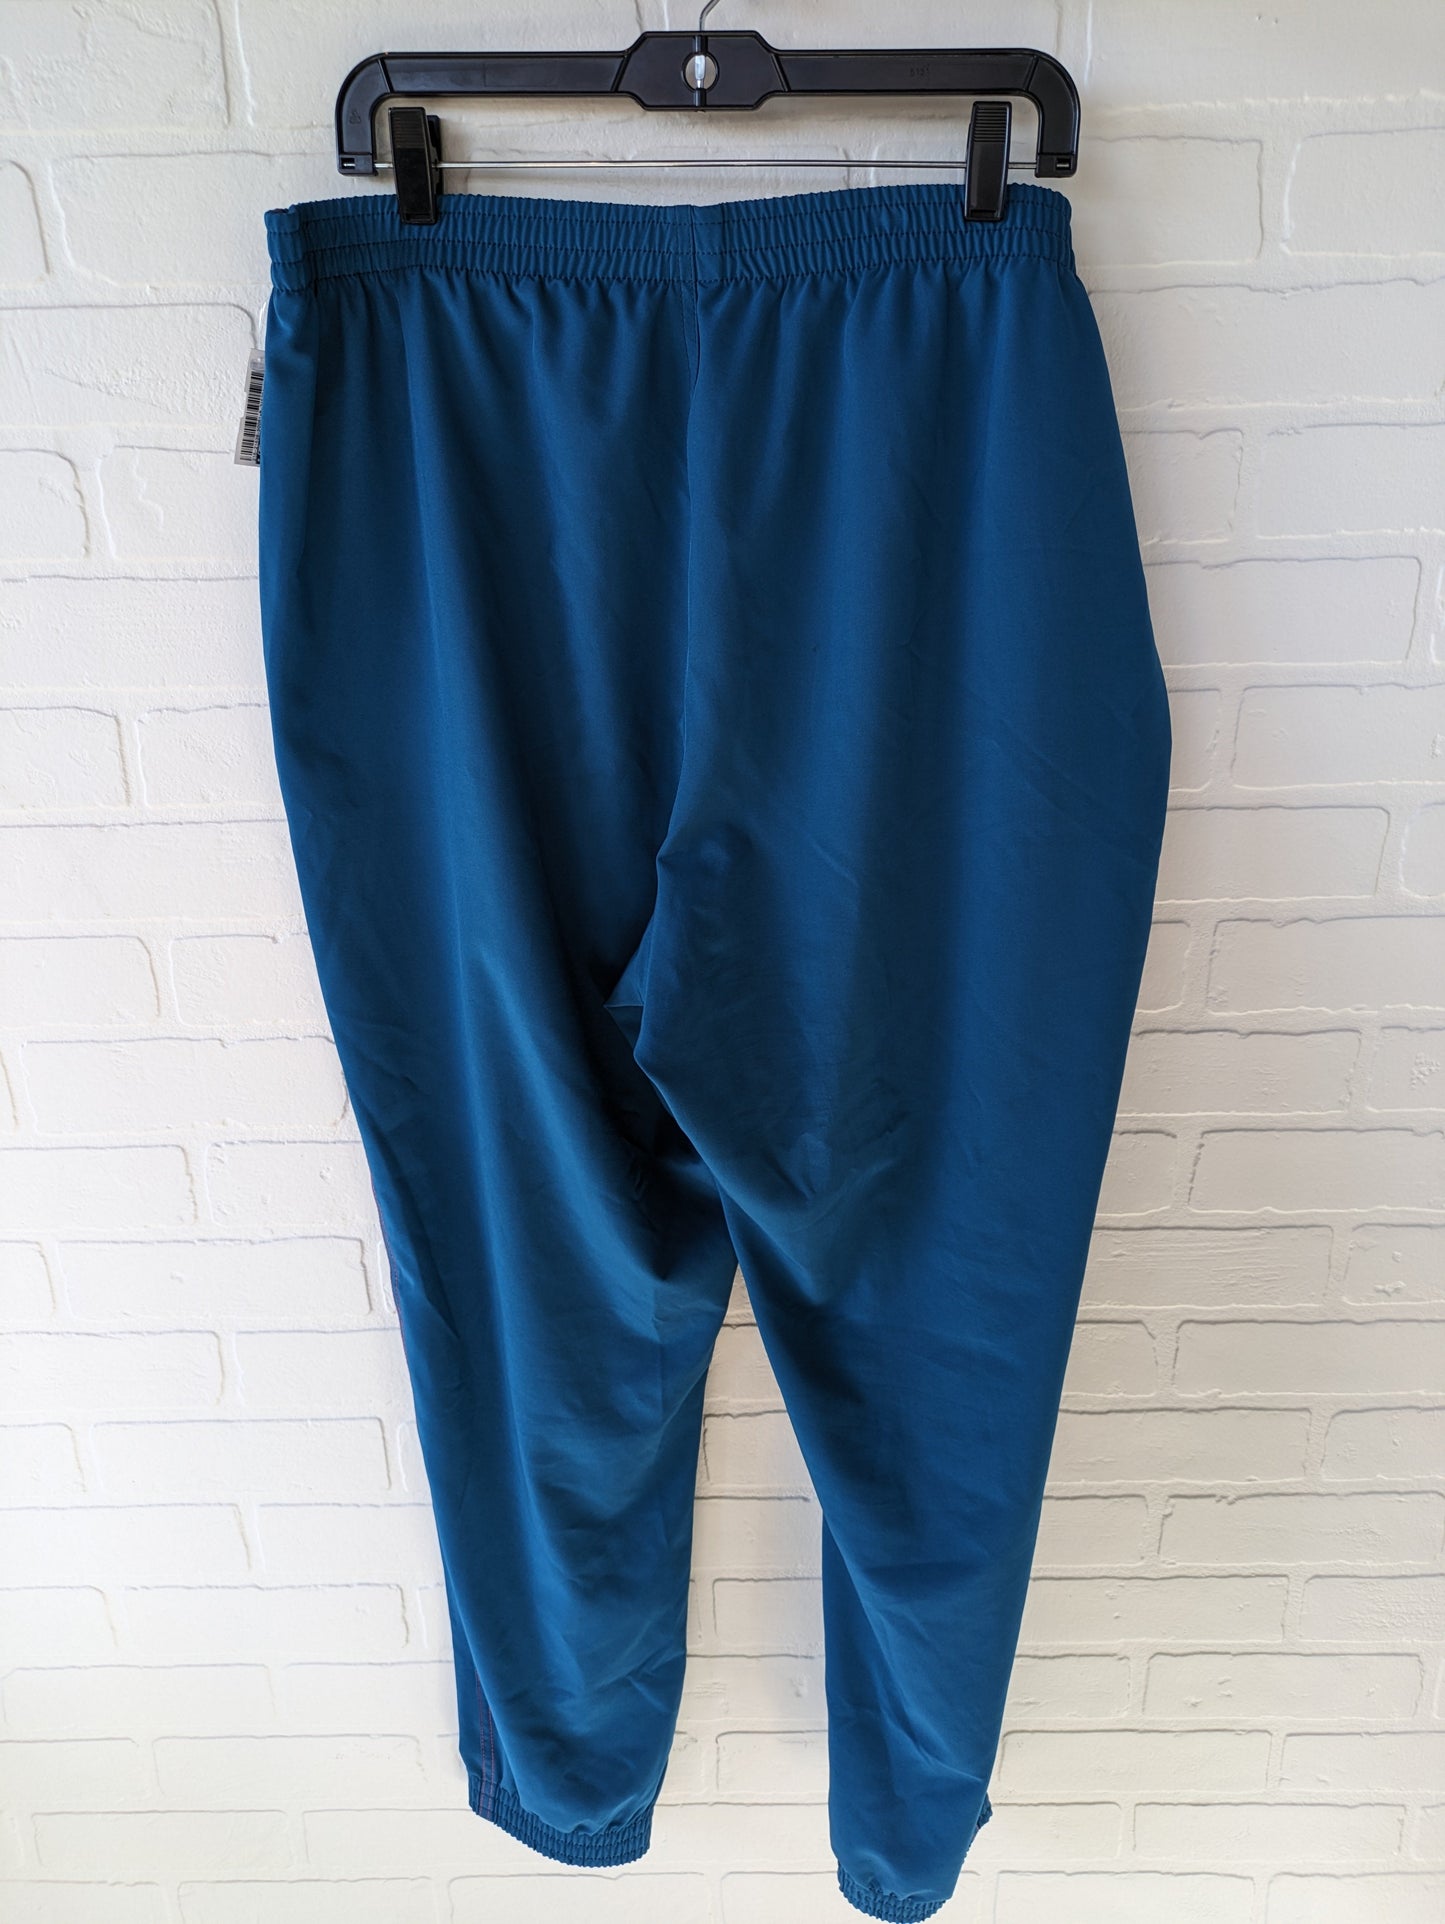 Pants Sweatpants By Cme  Size: 14